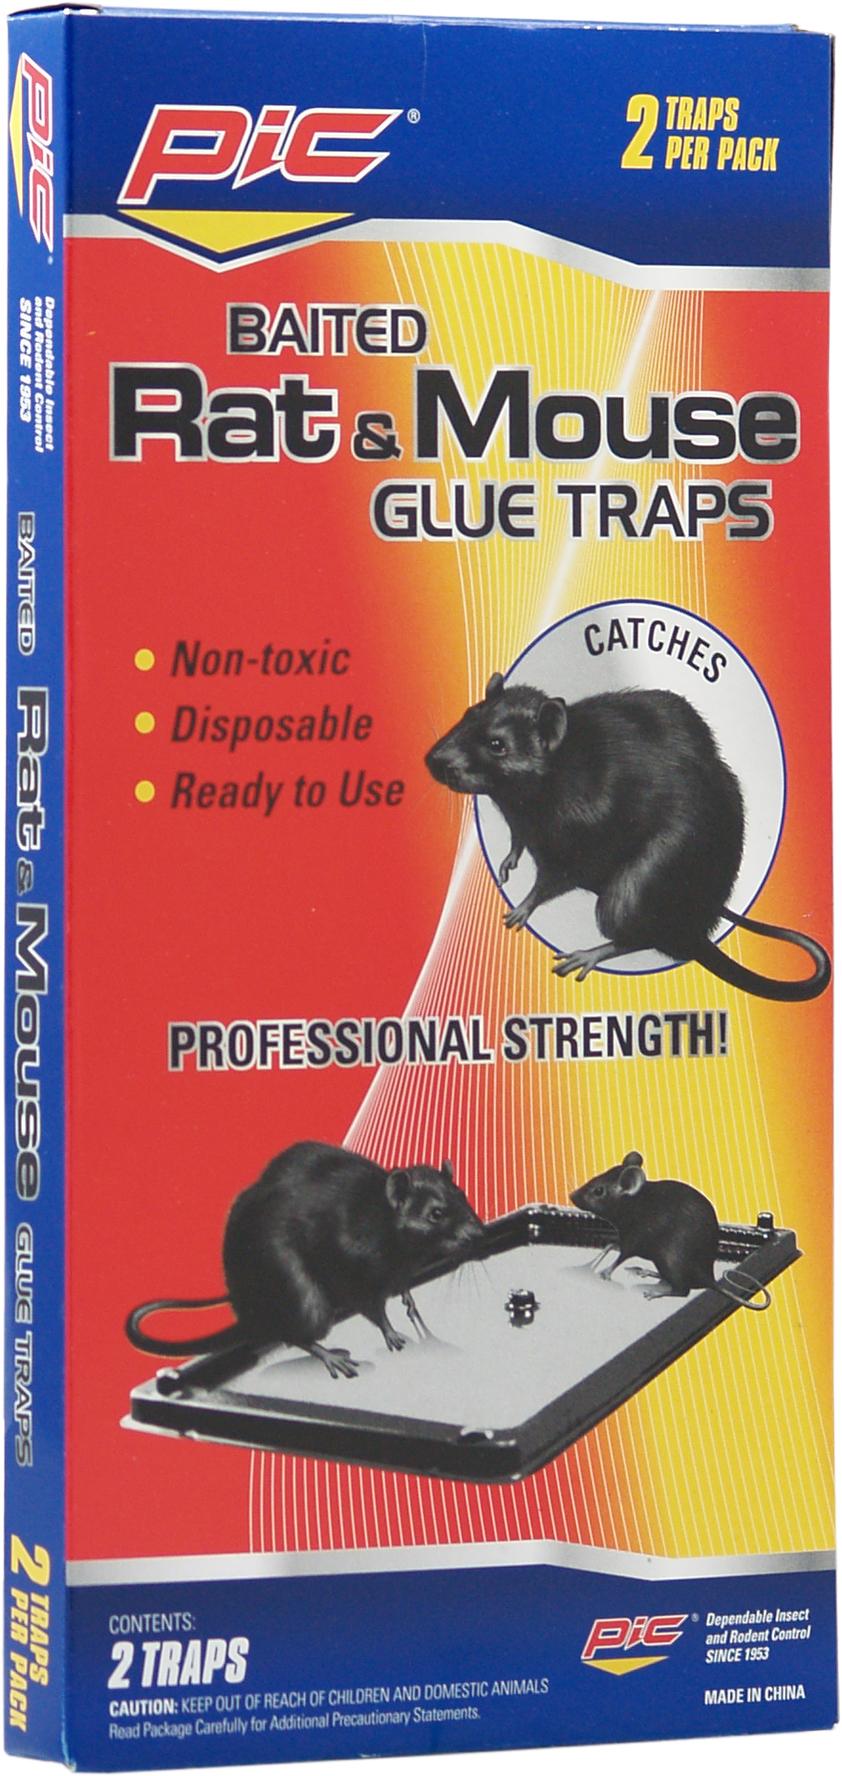 Ultra Catch Mouse Glue Trap